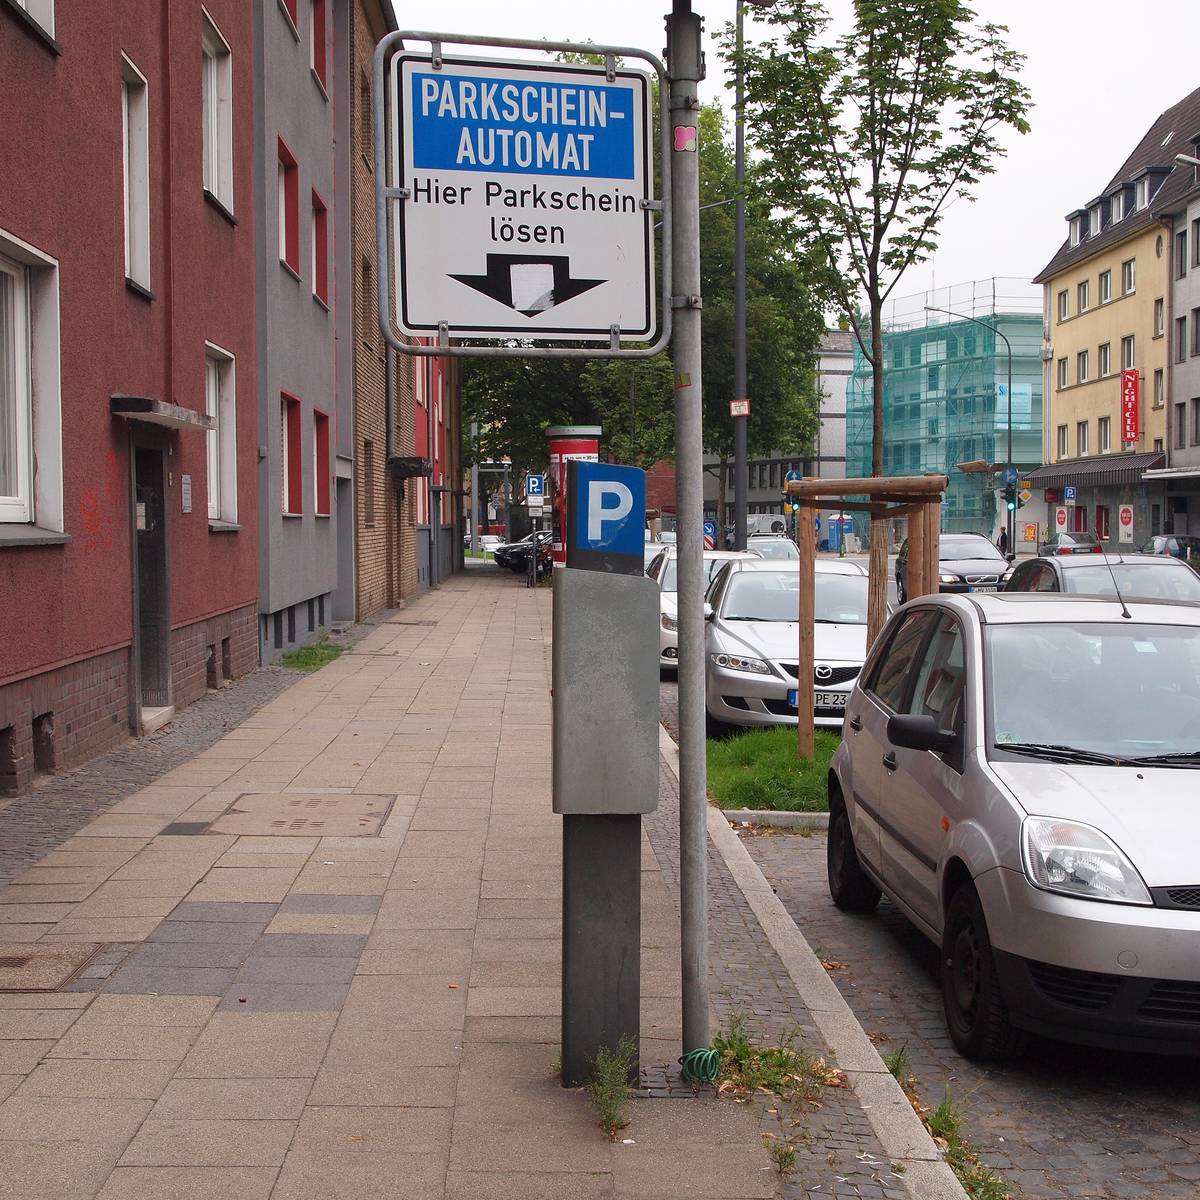 Kein kostenloses Parken in Dortmund - Radio 91.2